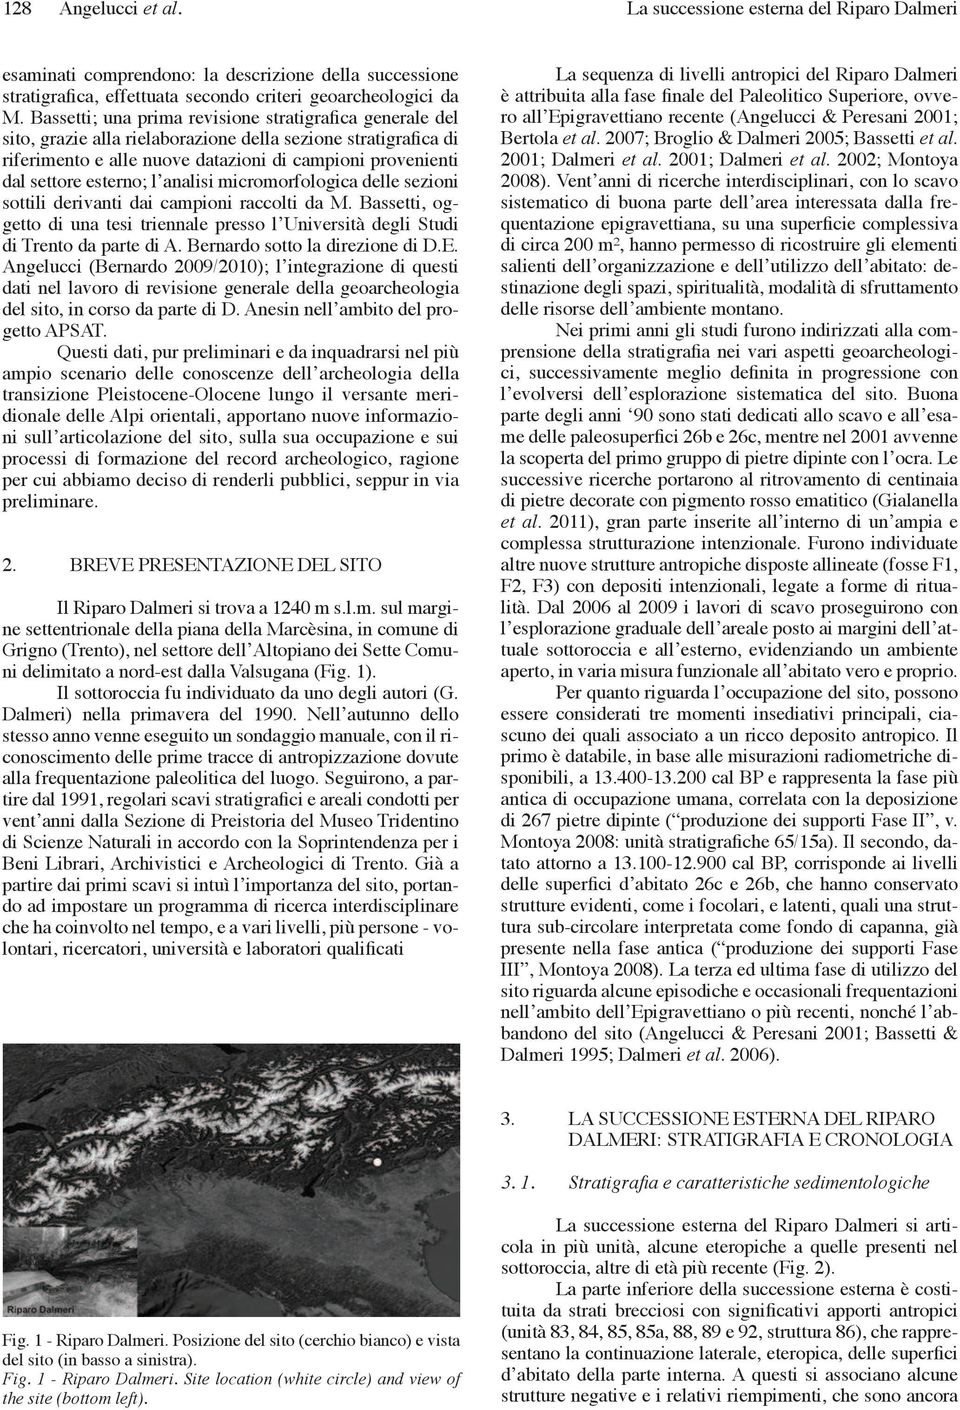 l analisi micromorfologica delle sezioni sottili derivanti dai campioni raccolti da M. Bassetti, oggetto di una tesi triennale presso l Università degli Studi di Trento da parte di A.